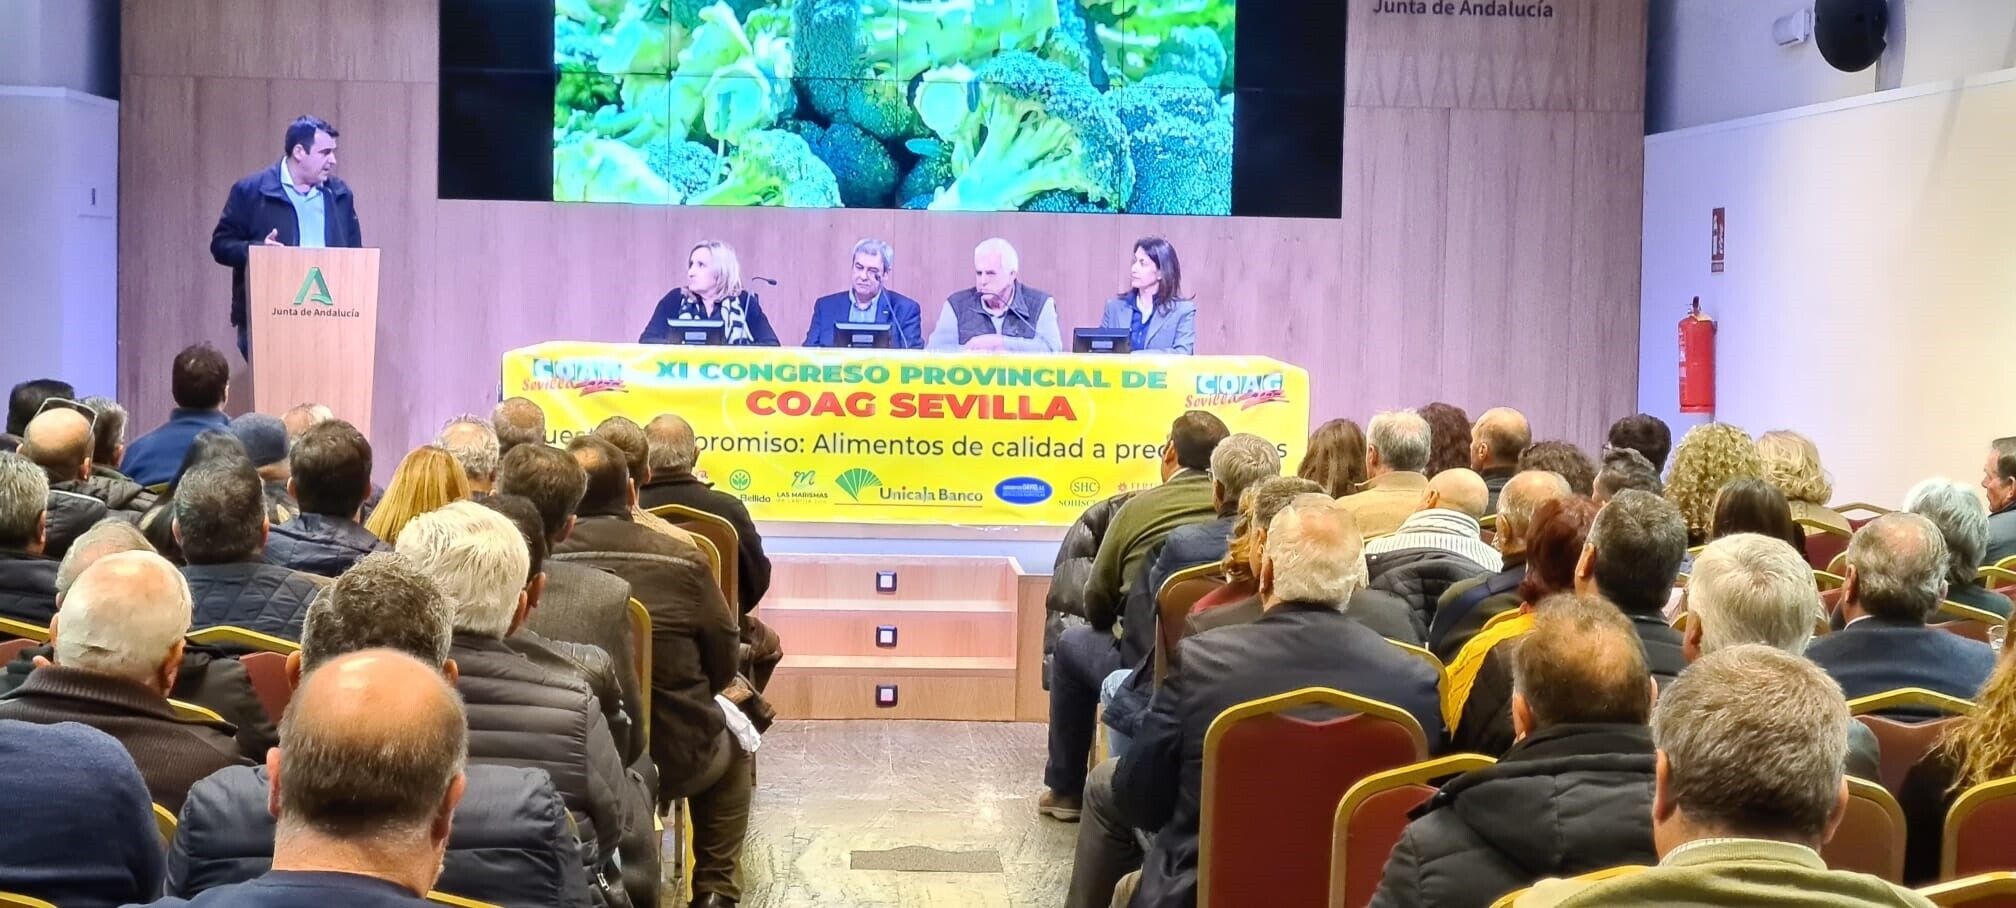 Congreso COAG Sevilla (2)